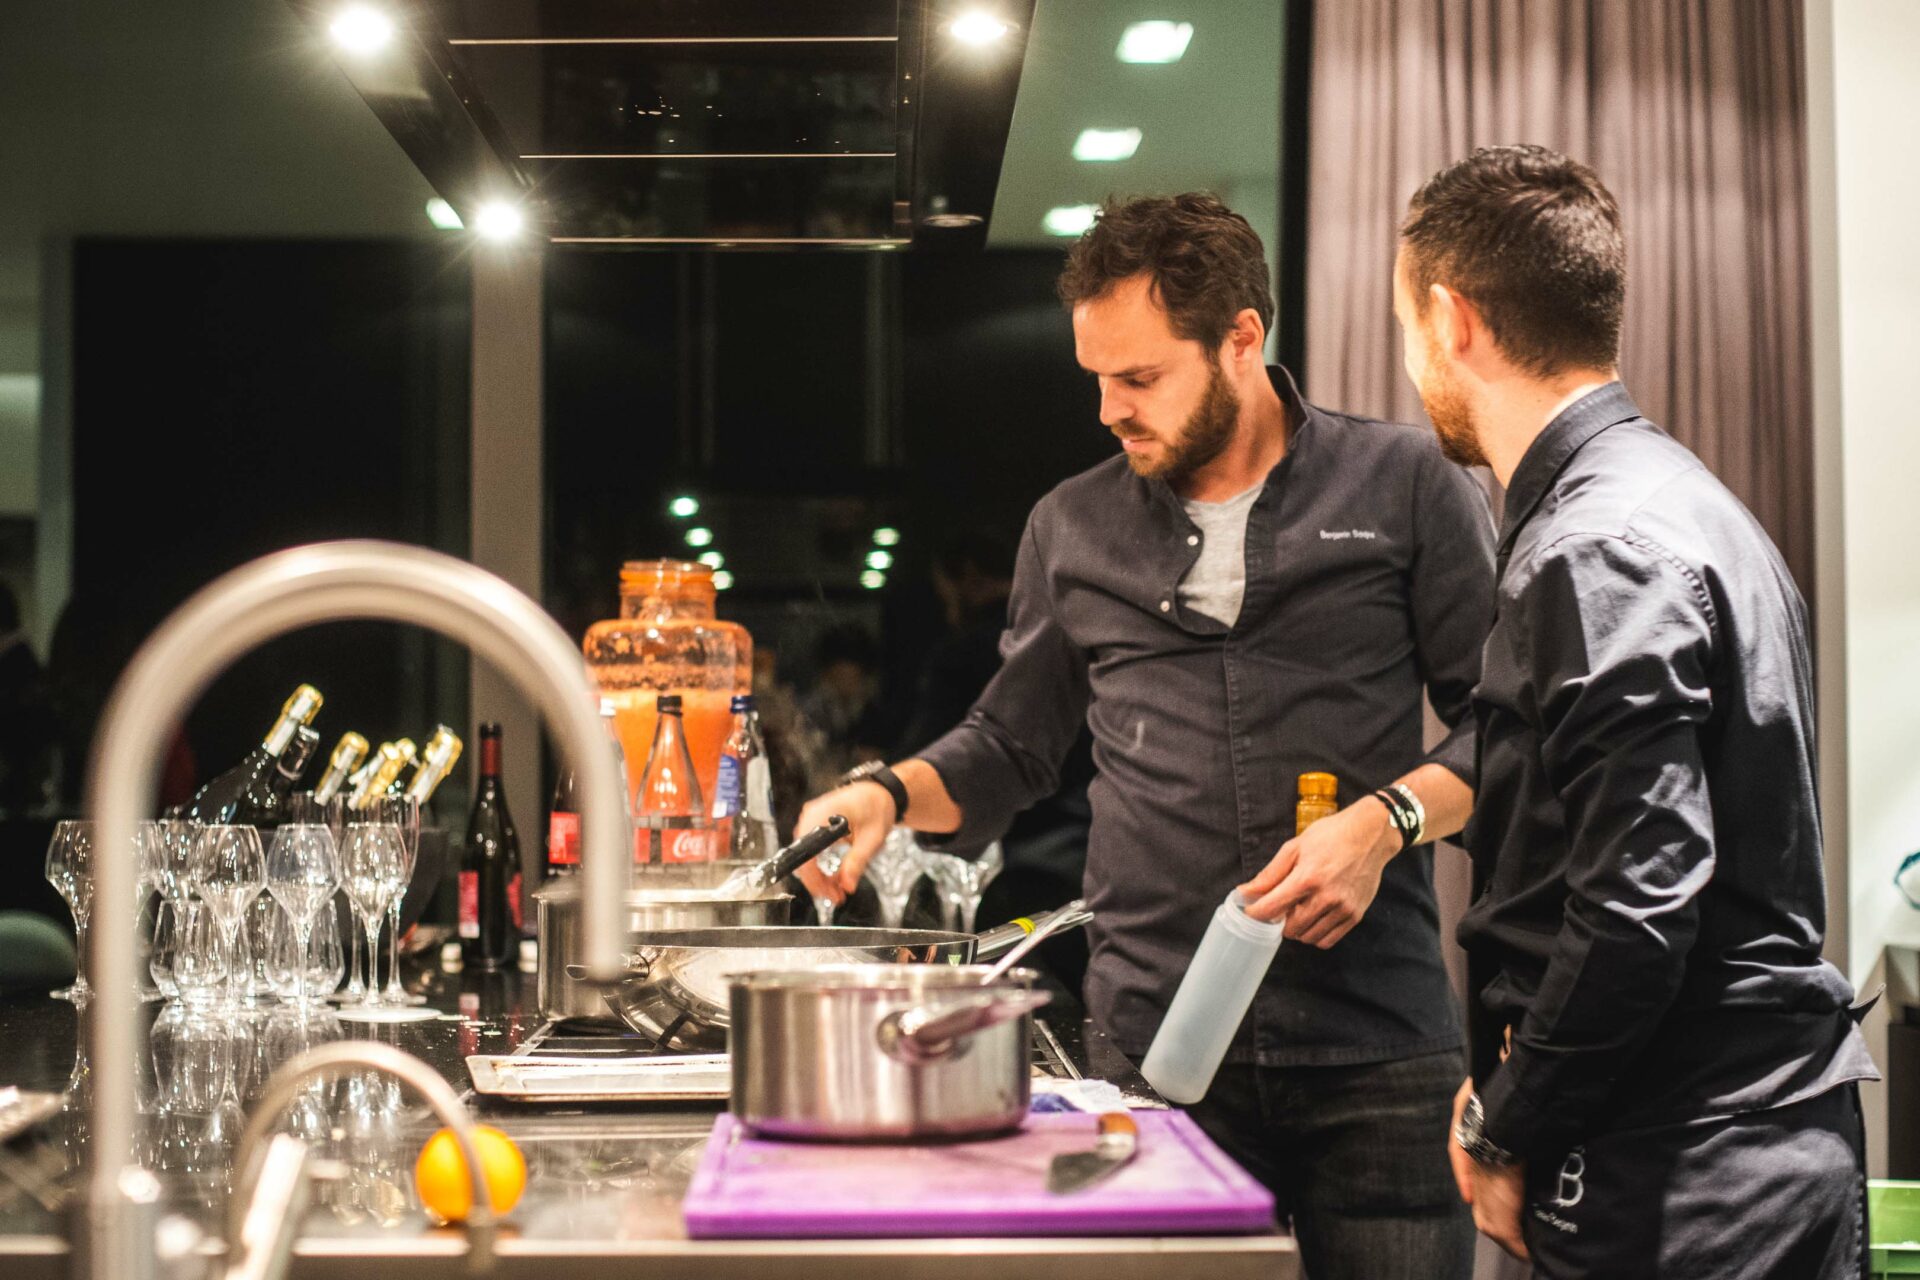 De maaltijd wordt voorbereid door chef Benjamin tijdens het evenement "How to invest in Italy" georganiseerd door Italy Sotheby's International Realty.